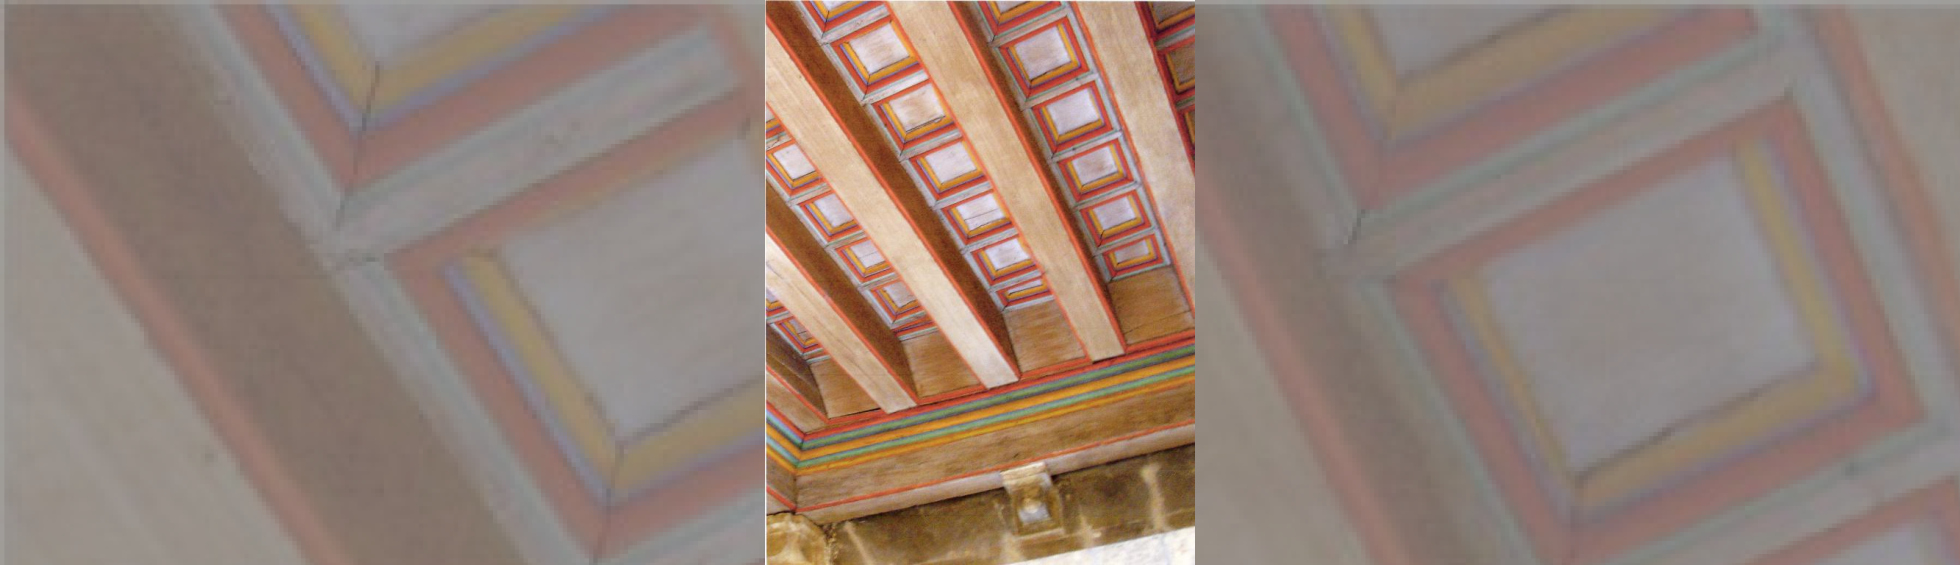 Plafond à caisson avec moulures peintes de différentes couleurs 